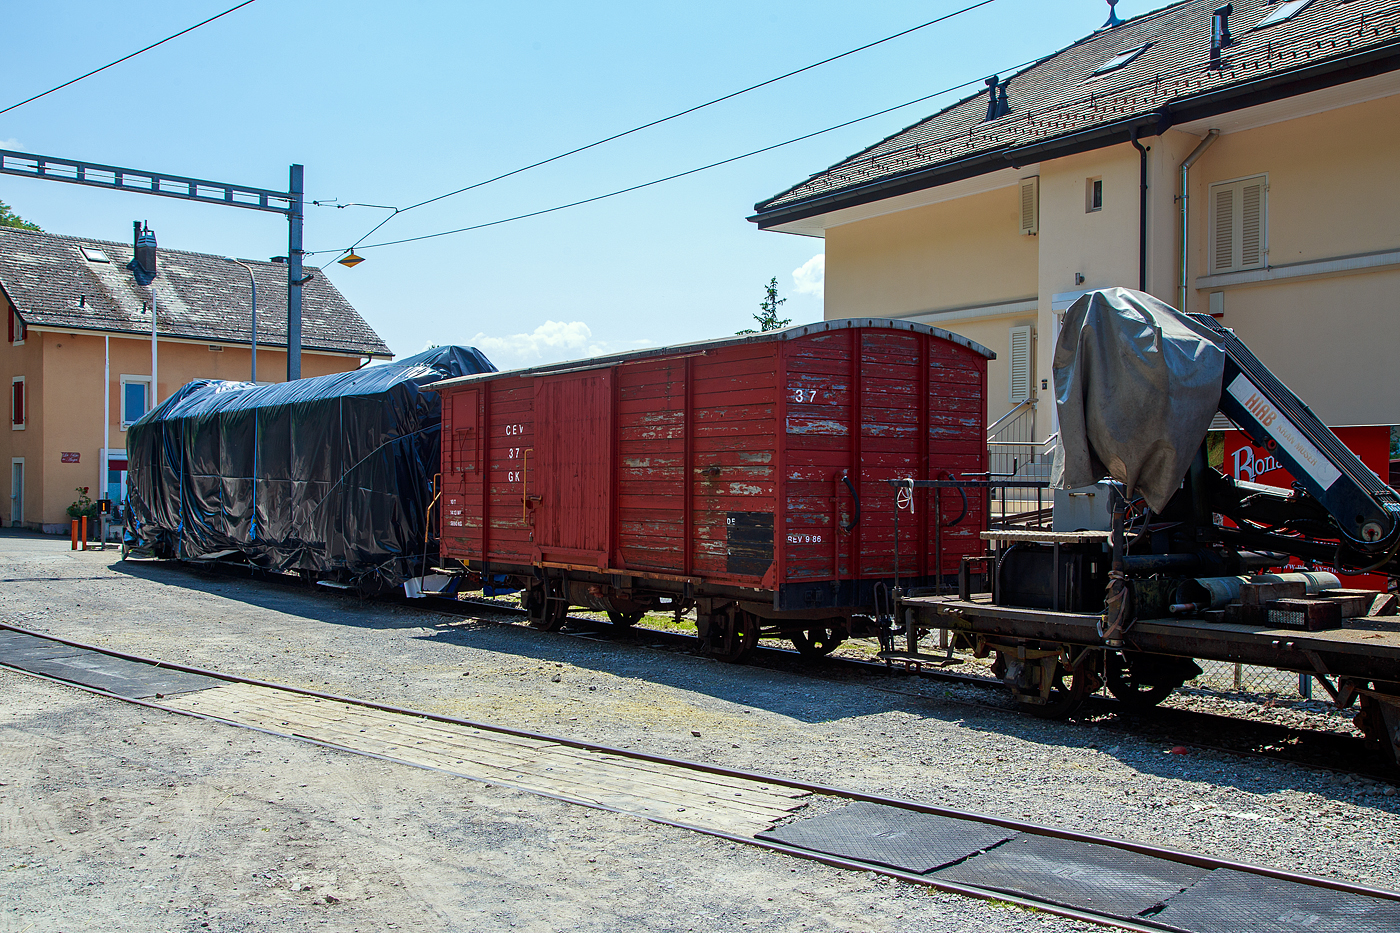 Der zweiachsige gedeckte Güterwagen mit einer offenen Plattform CEV Gk 37, ex K 37, der Chemins de fer électriques Veveysans (heute MVR - Transports Montreux–Vevey–Riviera) ist am 27.05.2023 beim Bahnhof Chamby abgestellt. Der Wagen gehört heute der Museumsbahn Blonay-Chamby.

Der zweiachsige CEV Gk 37 wurde 1905 von SWS Schlieren (Schweizerische Wagons- und Aufzügefabrik AG) gebaut.

TECHNISCHE DATEN (CEV Gk 37):
Typ: K2
Baujahr: 1905
Hersteller: SWS
Spurweite: 1.000 mm (Meterspur)
Achsanzahl: 2 
Eigengewicht: 5.890 kg
Nutzlast: 10.000 kg
Ladefläche: 14,13 m²